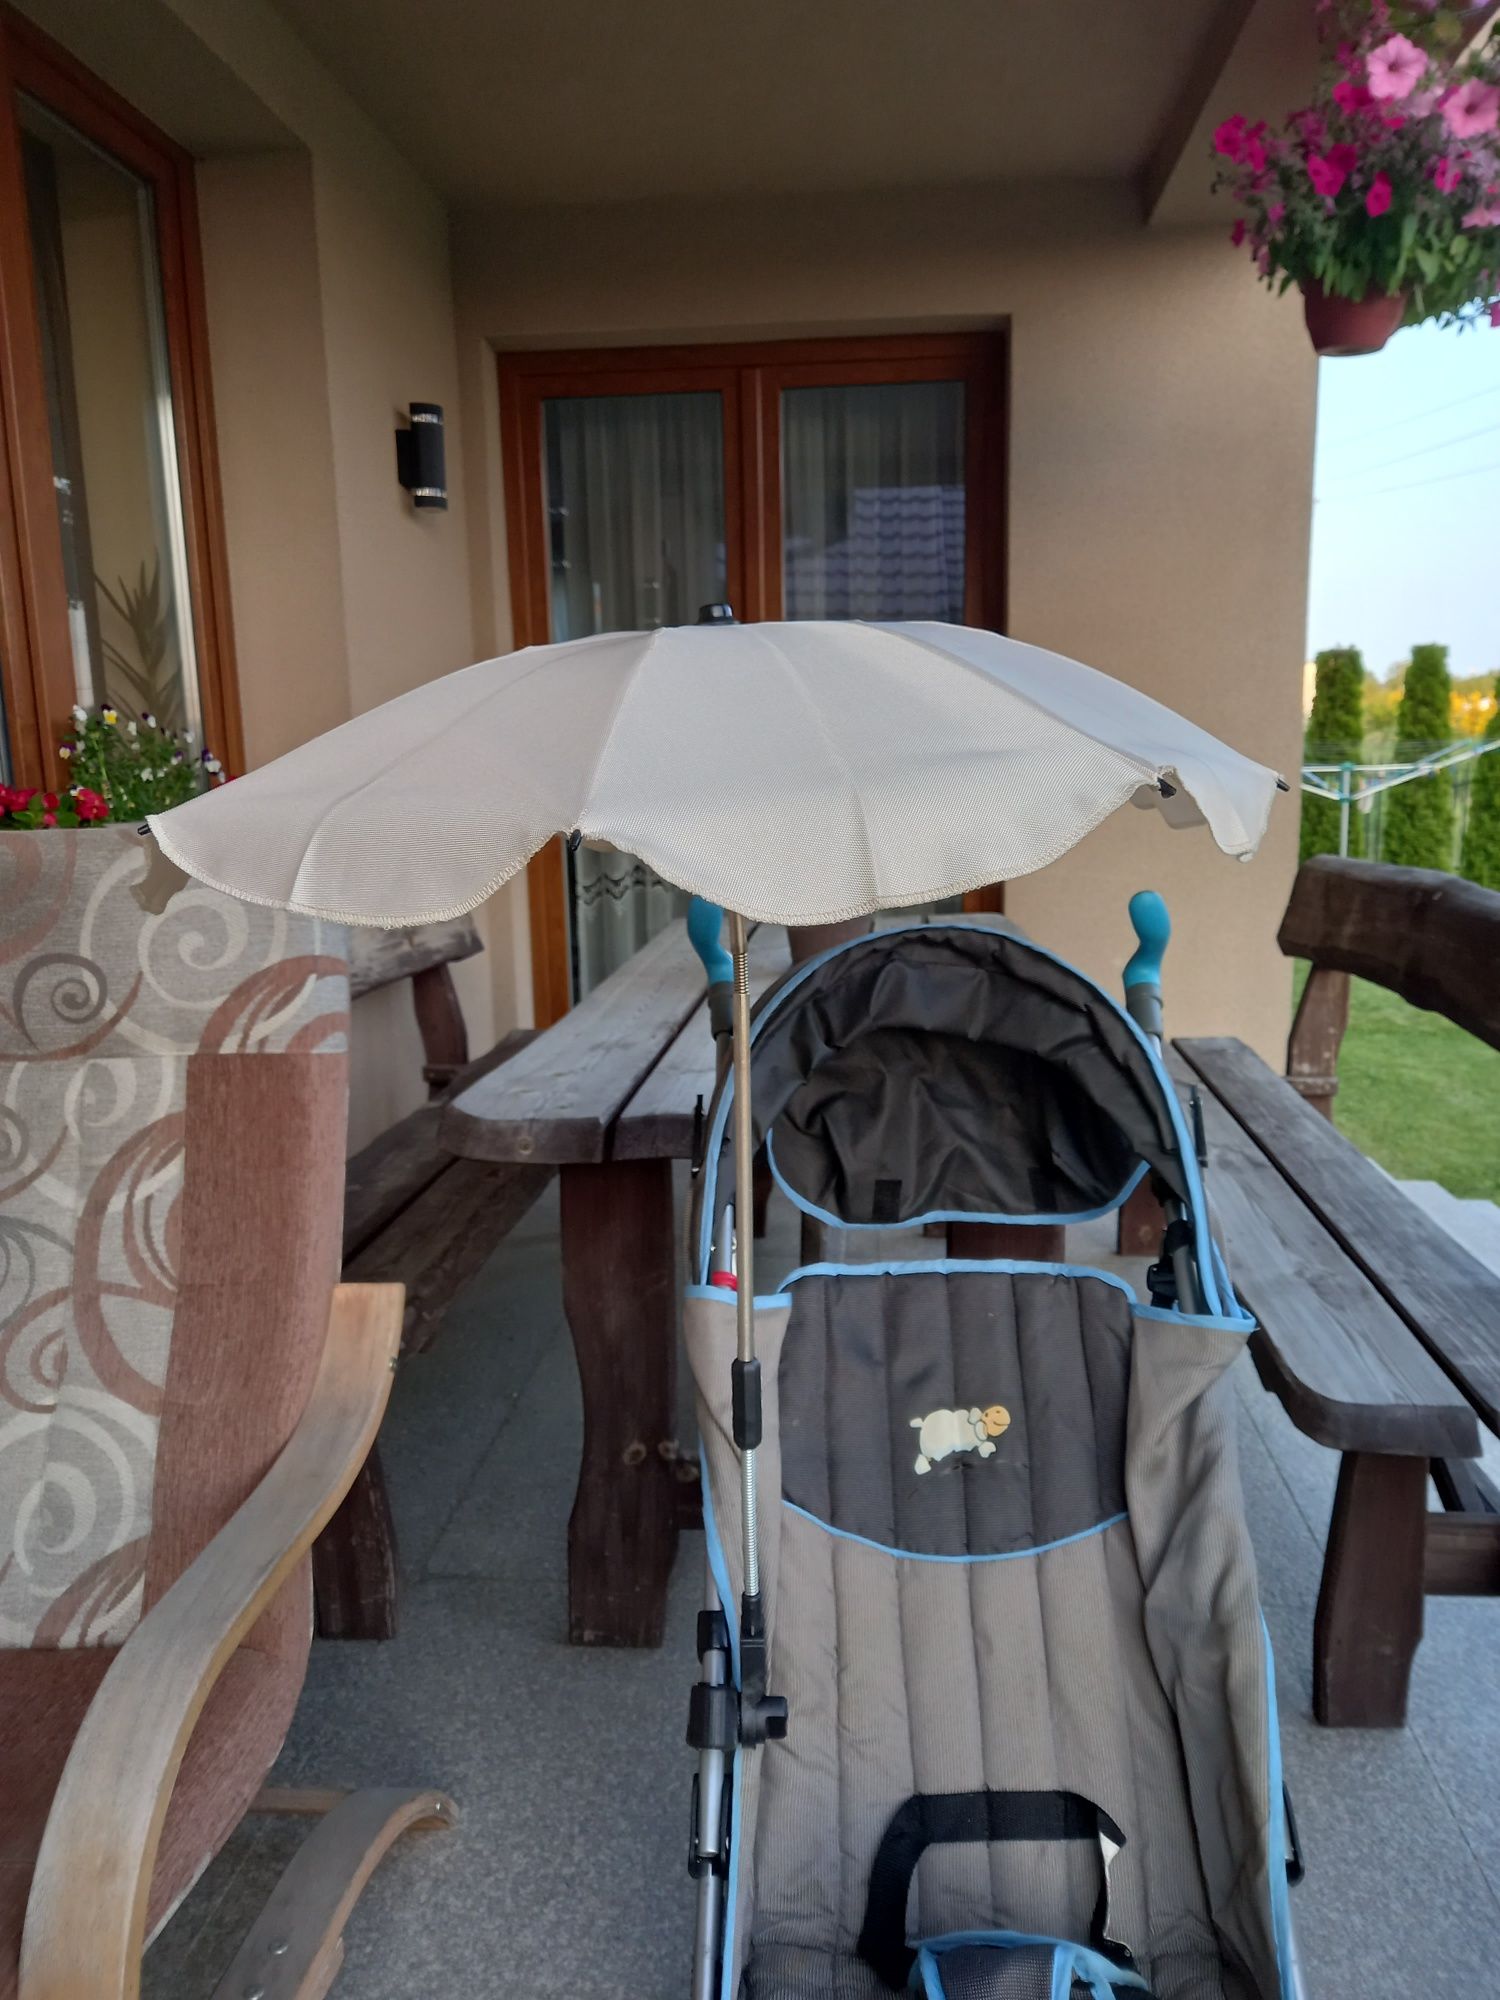 Parasolka do wózka dziecięcego